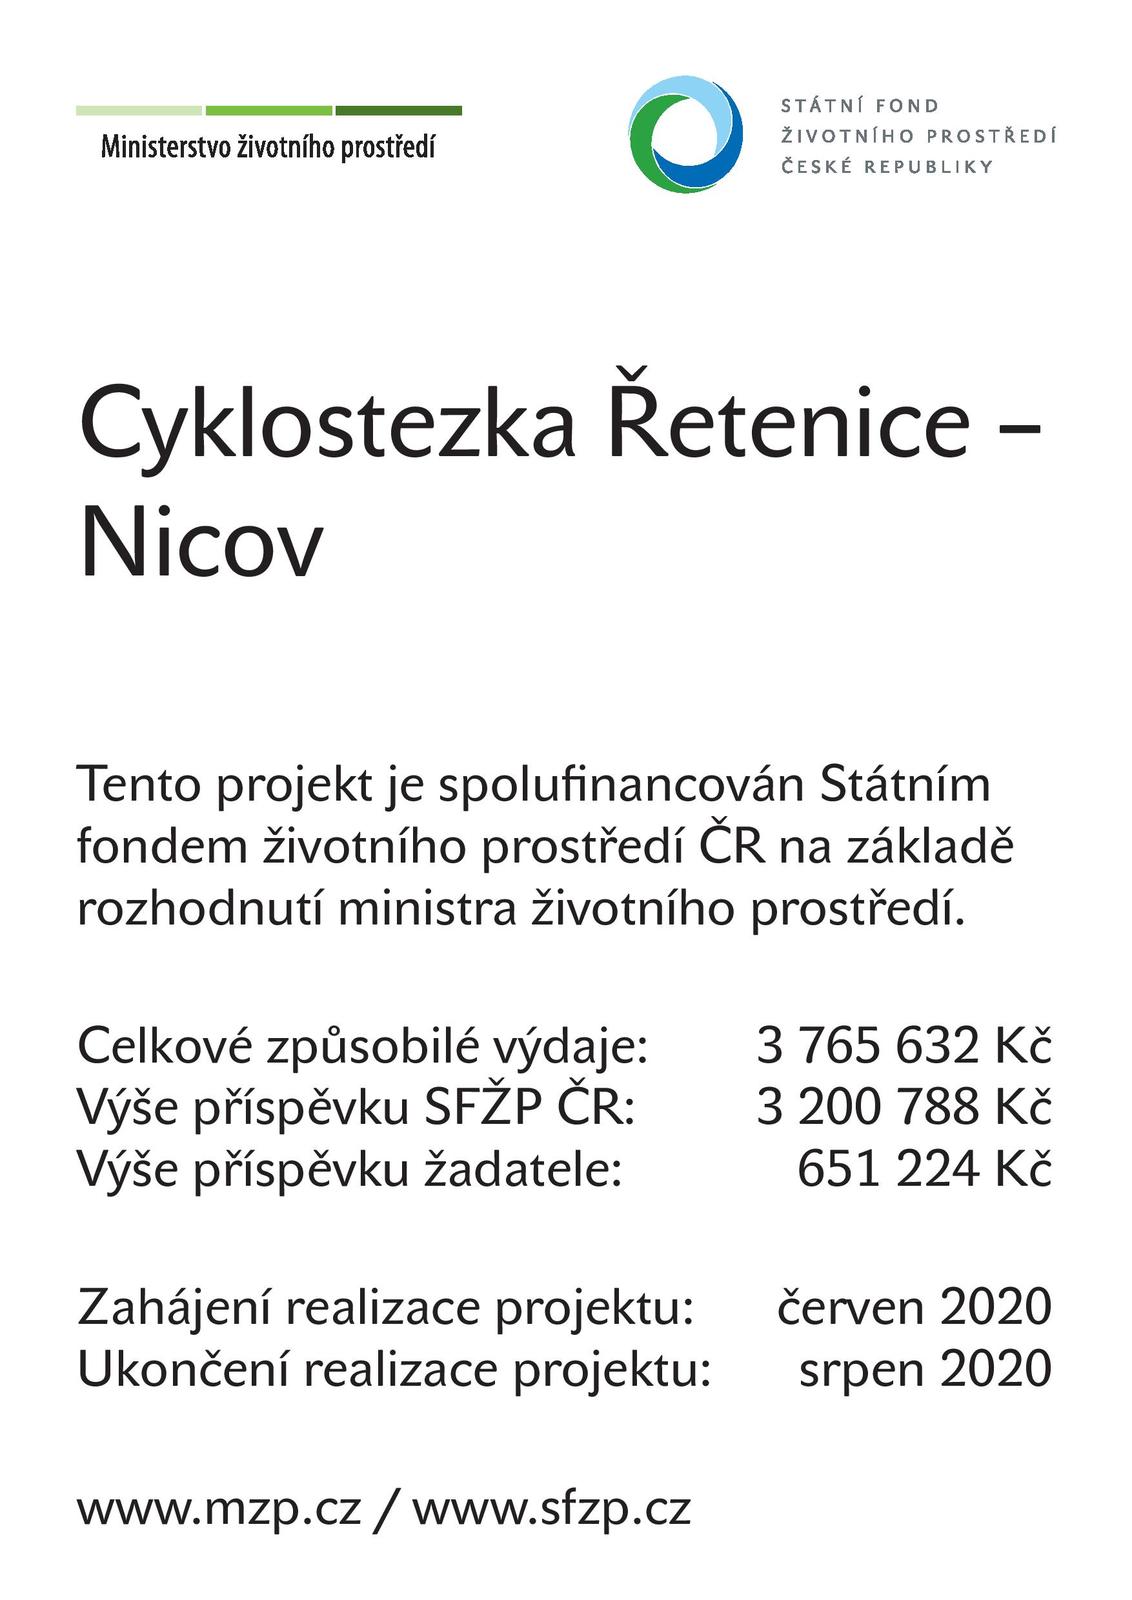 NPŽP_Plakát A3_Řetenice-Nicov_cyklostezka-page-001.jpg